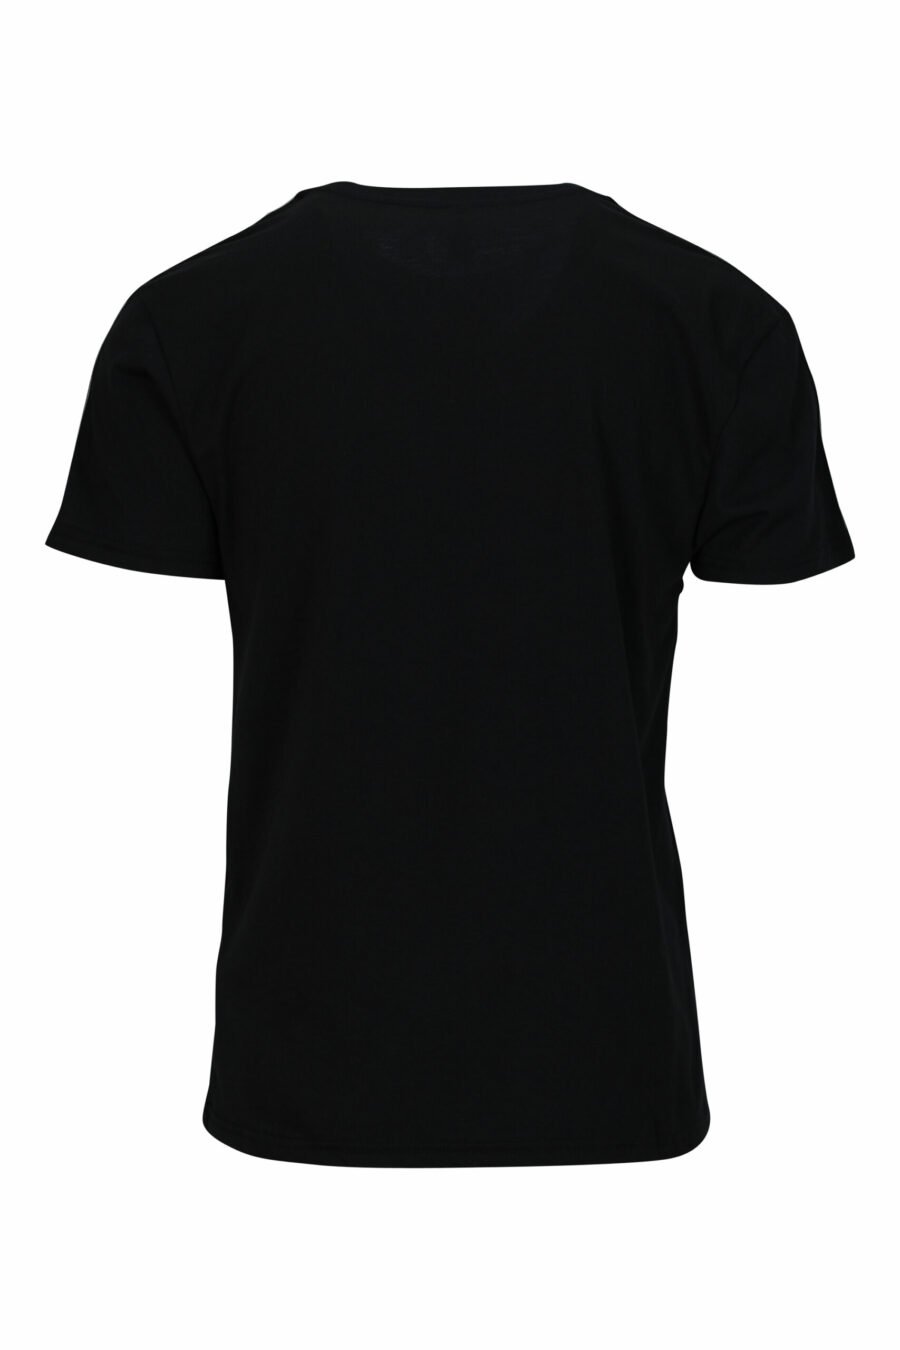 Schwarzes T-Shirt mit Mini-Logo auf Band - 667113602967 1 skaliert